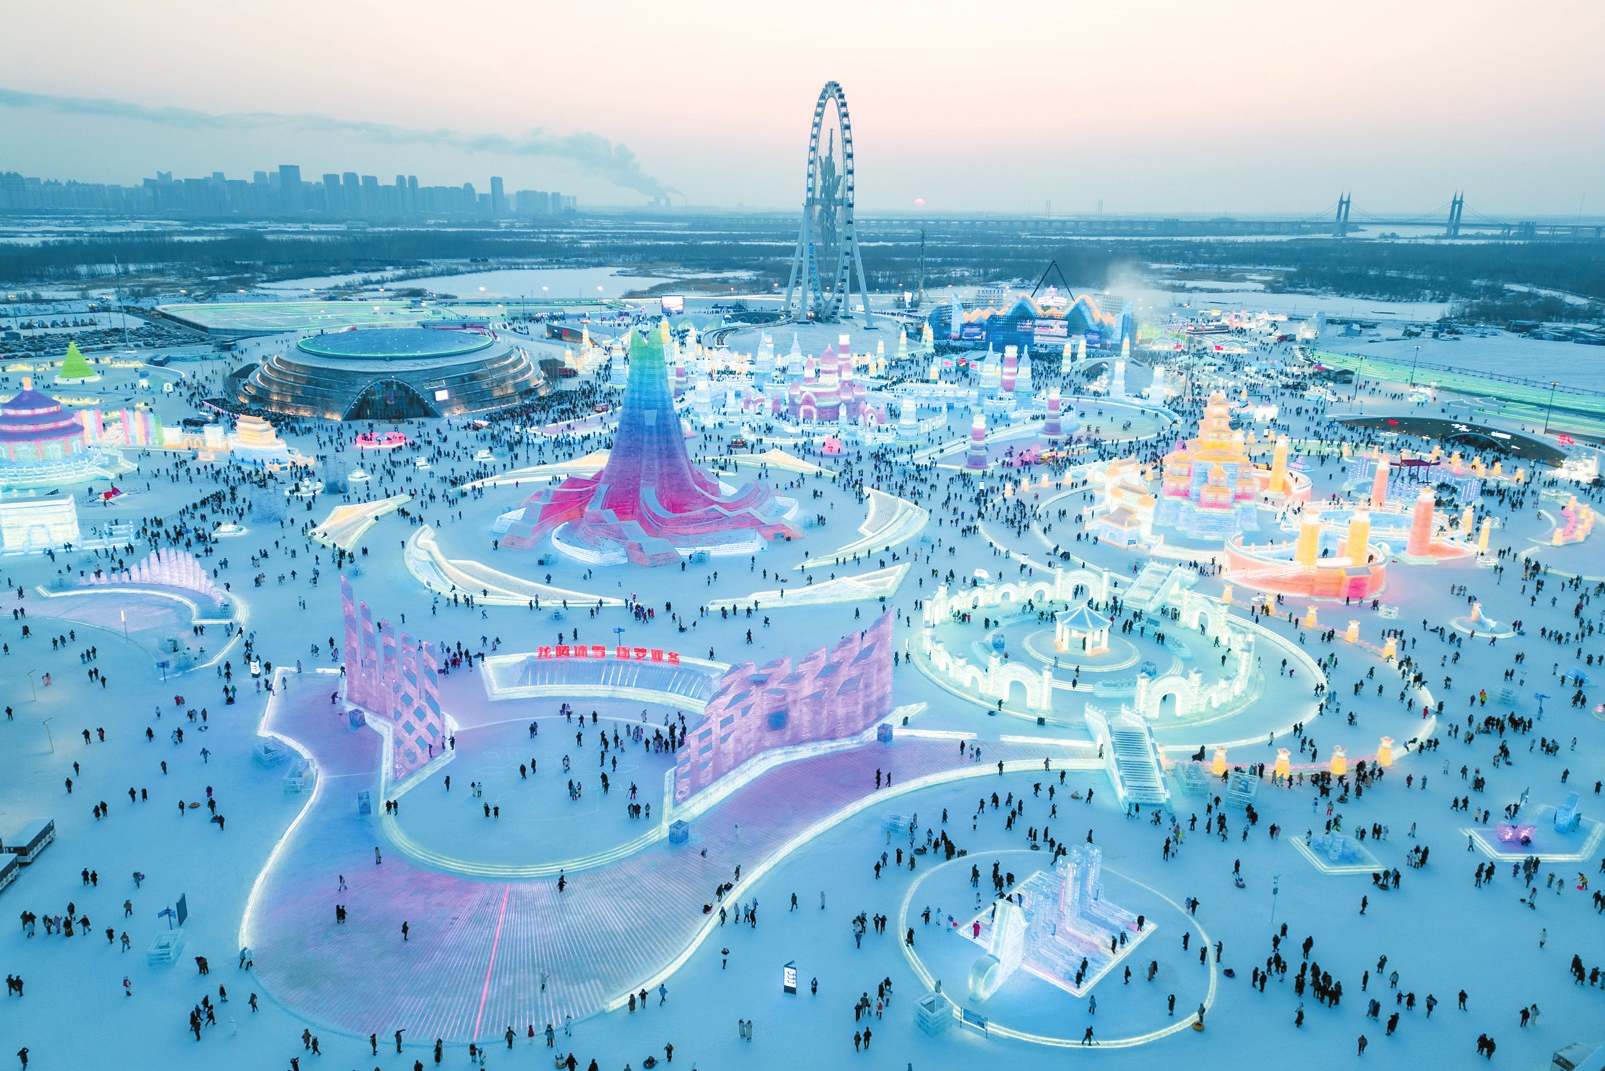 1月5日,游客在哈尔滨冰雪大世界园区内游玩(无人机照片)